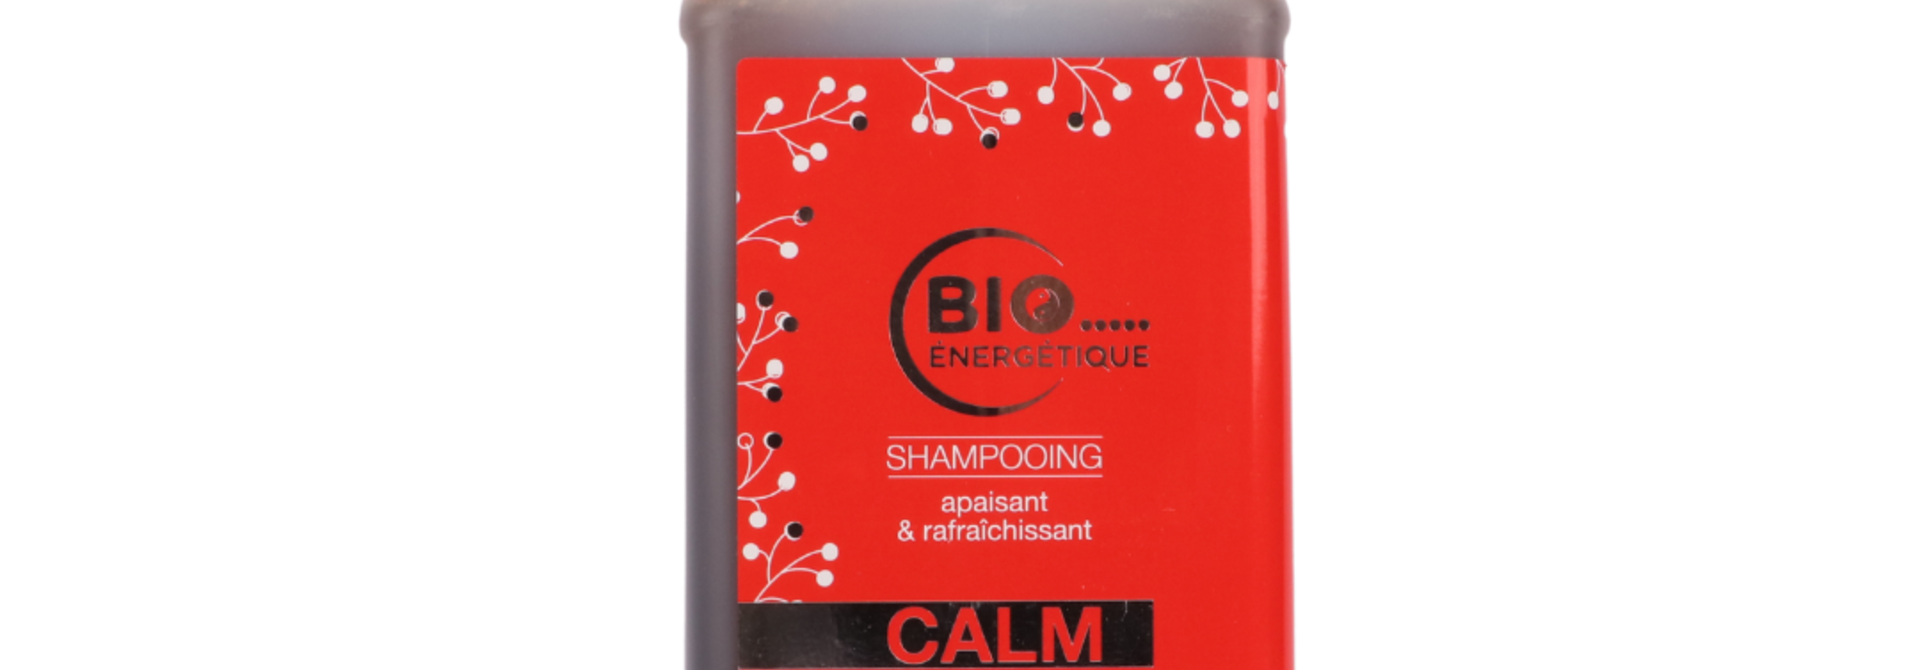 CALM Shampoo / Soothing & refreshing